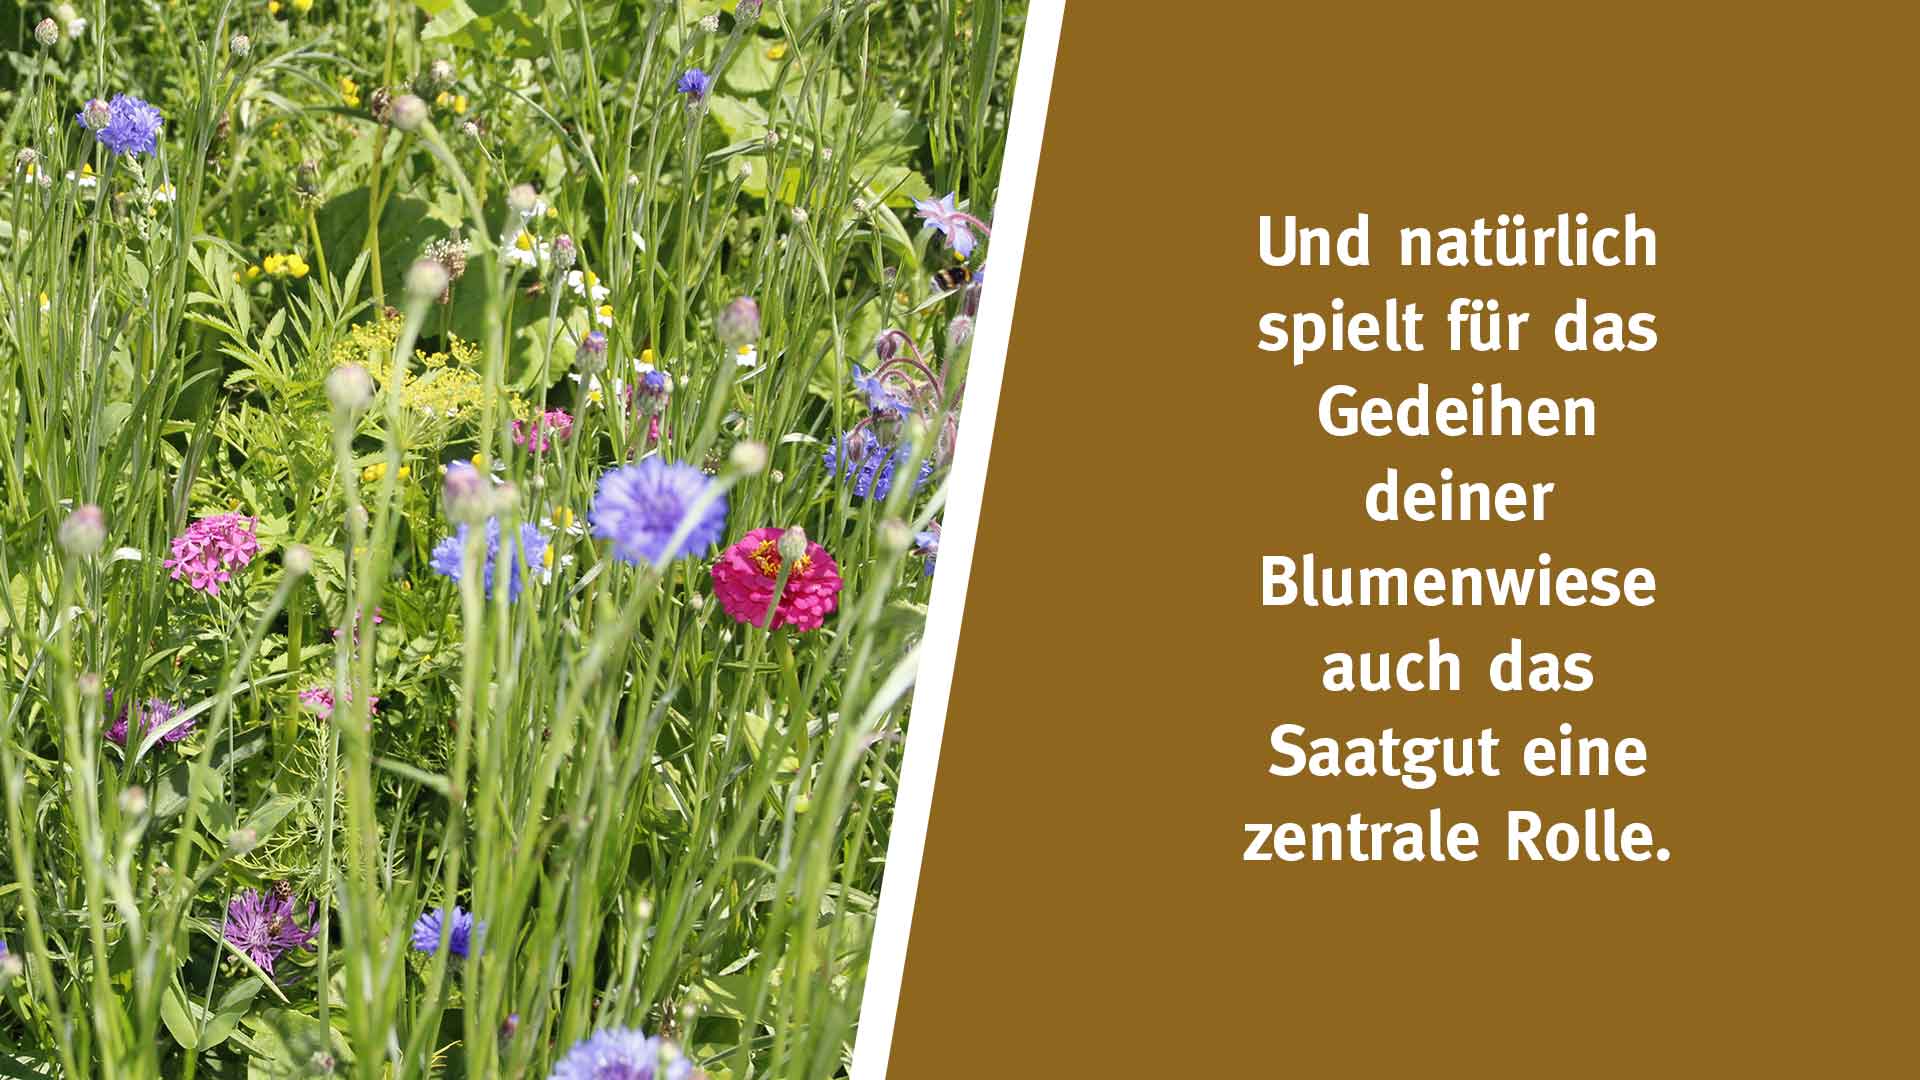 Und natürlich spielt für das Gedeihen deiner Blumenwiese auch das Saatgut eine zentrale Rolle.